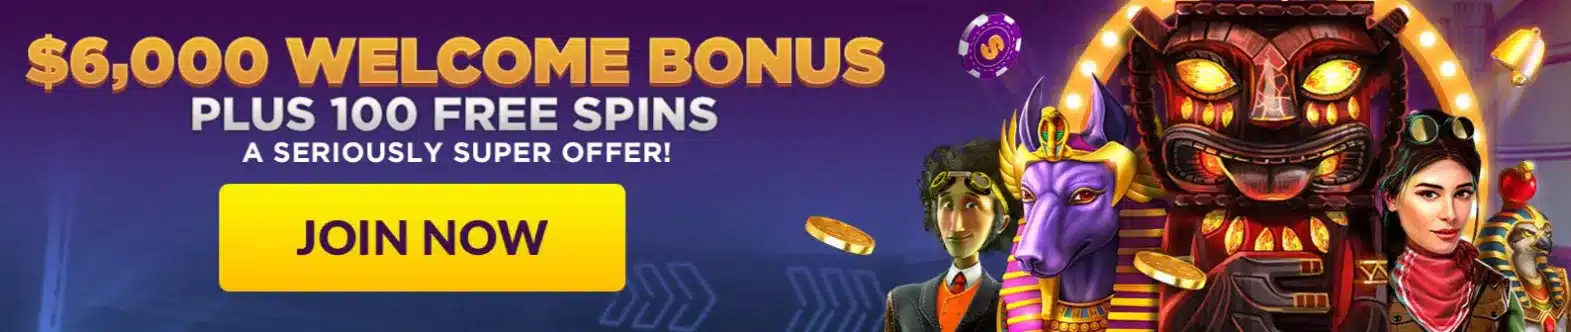 Super Slots Casino Bonus